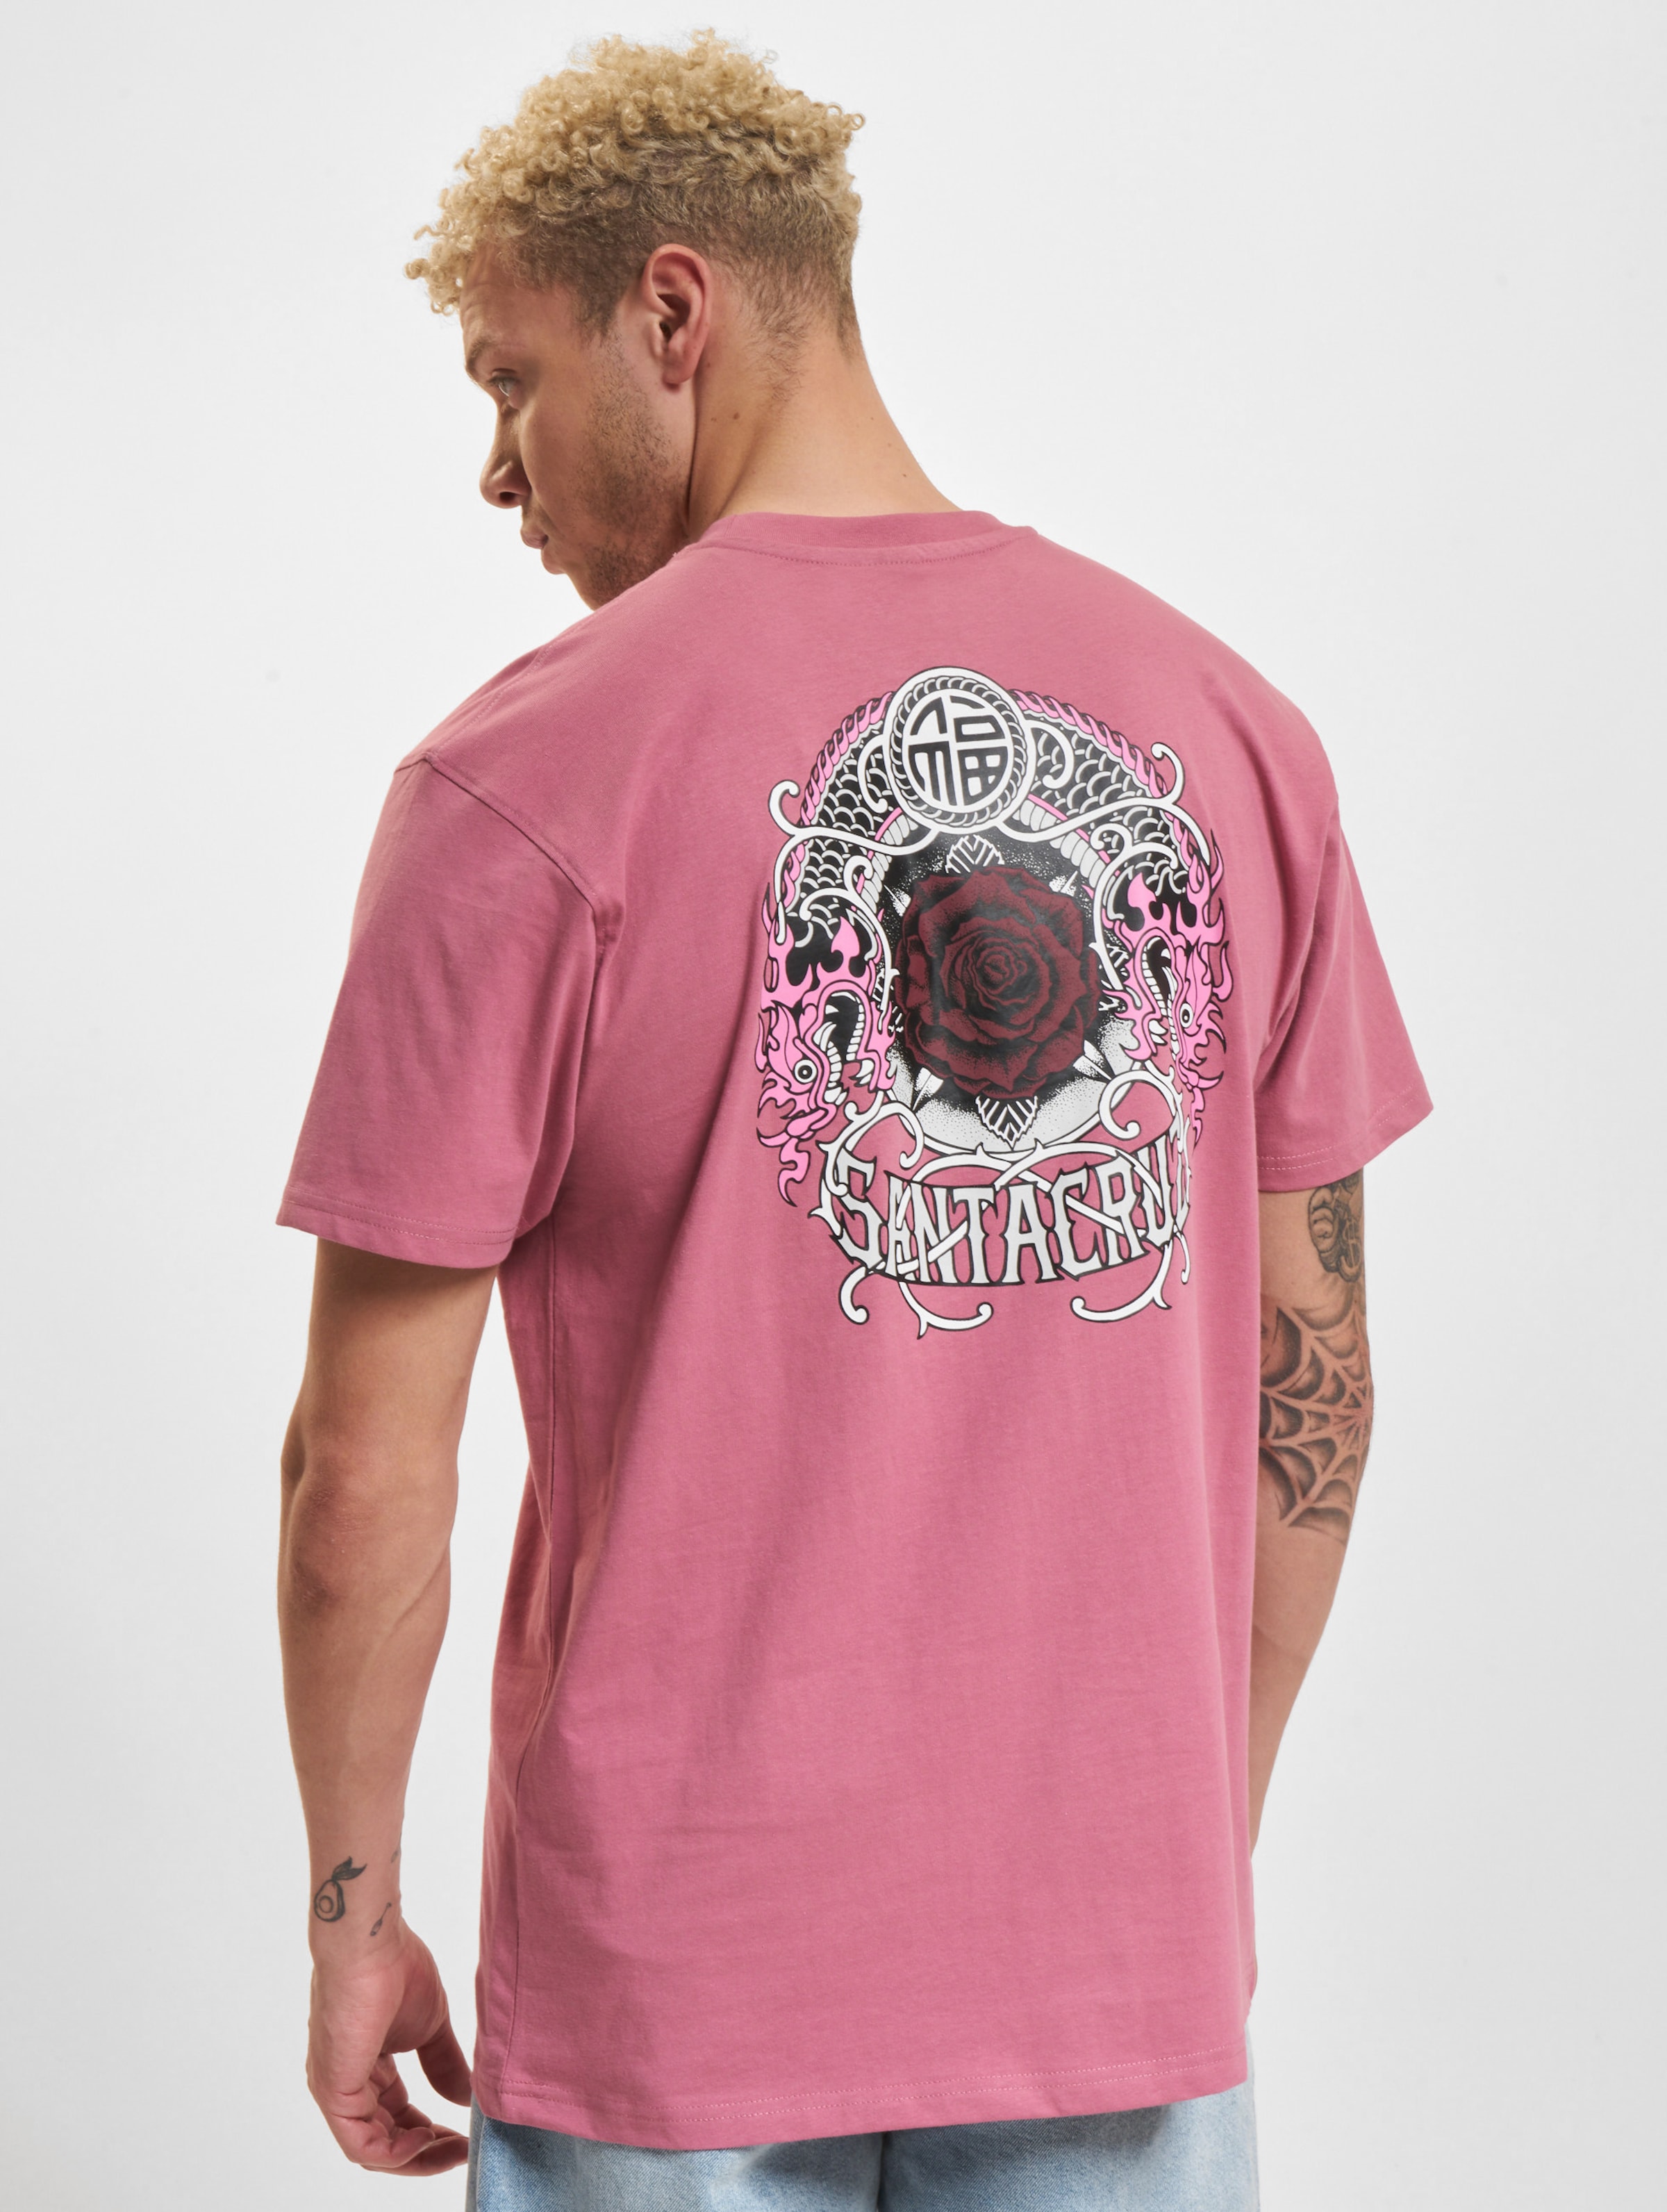 Santa Cruz Dressen Rose Crew One T-Shirt Männer,Unisex op kleur roze, Maat S